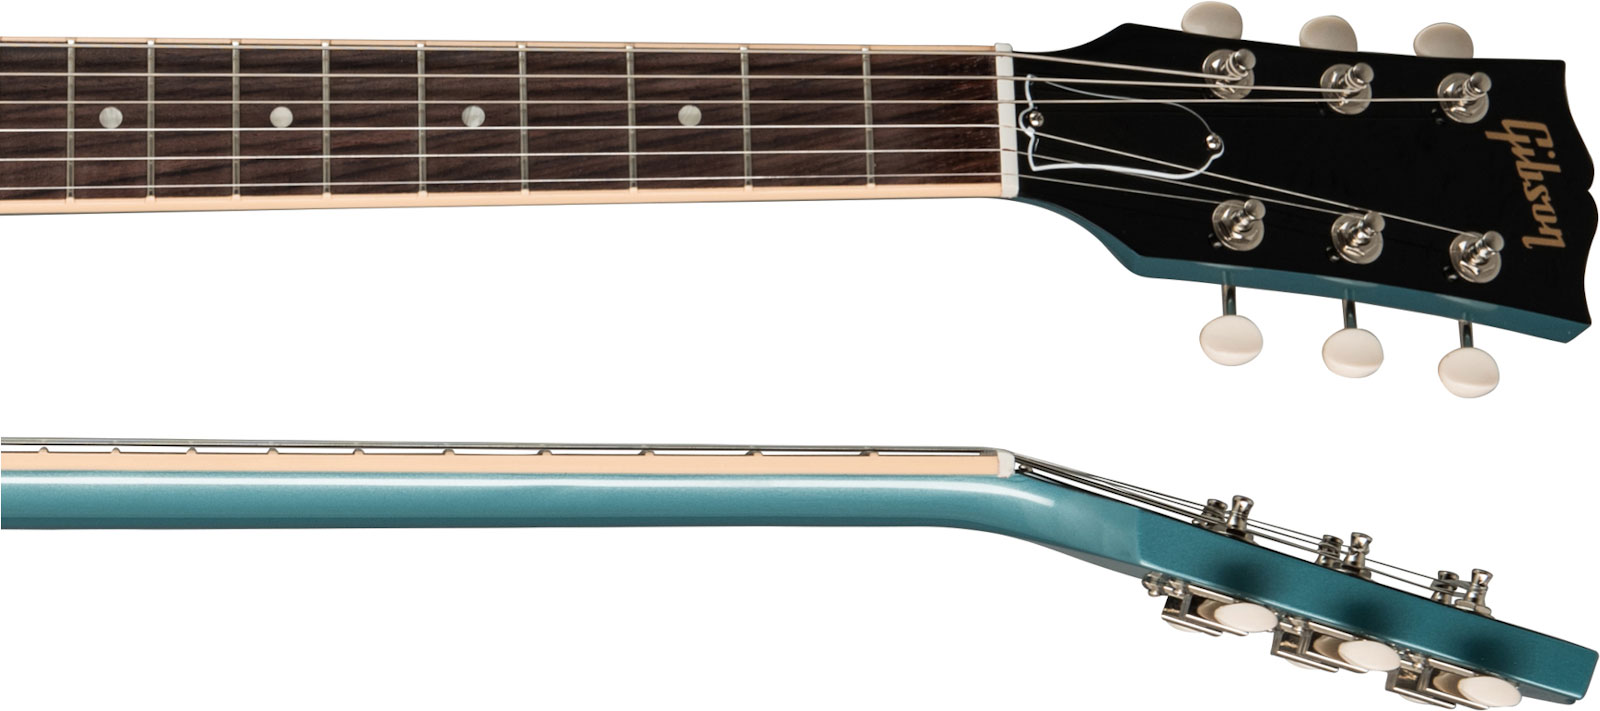 Gibson Sg Special Original P90 - Pelham Blue - Retro rock electric guitar - Variation 3